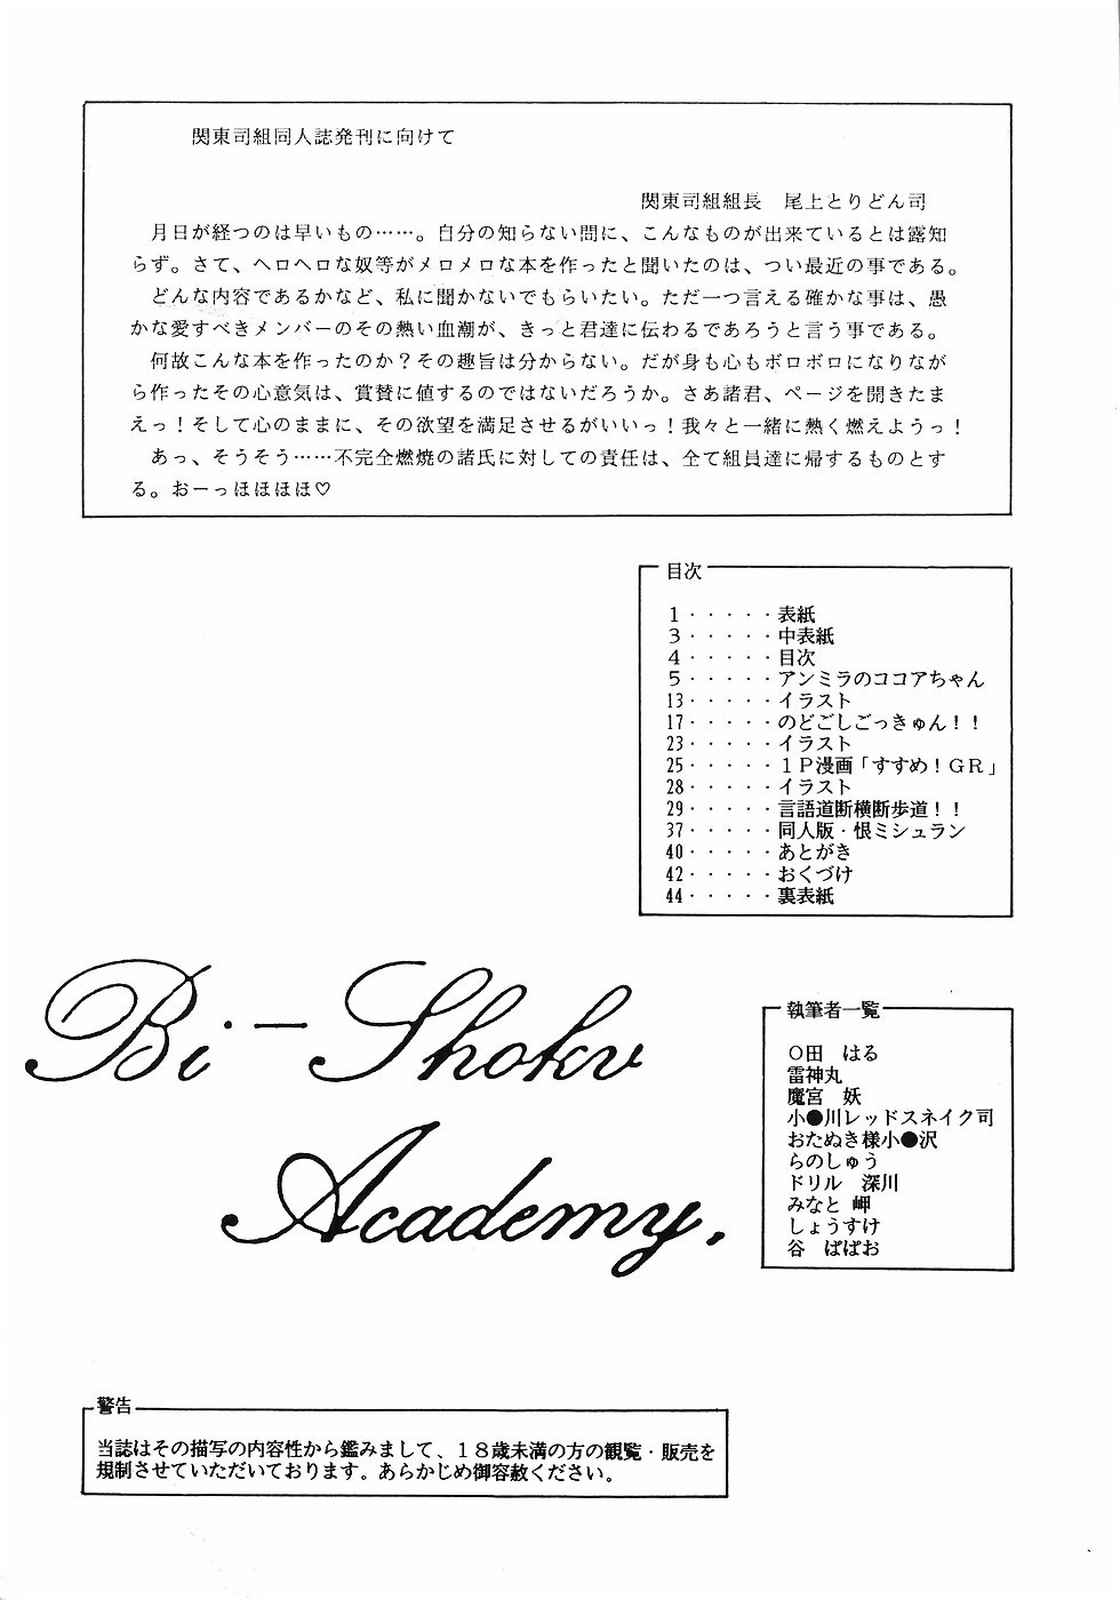 [美色アカデミィー＆関東司組 (Various)] Bi-shoku Academy Vol.1 (Various) page 3 full